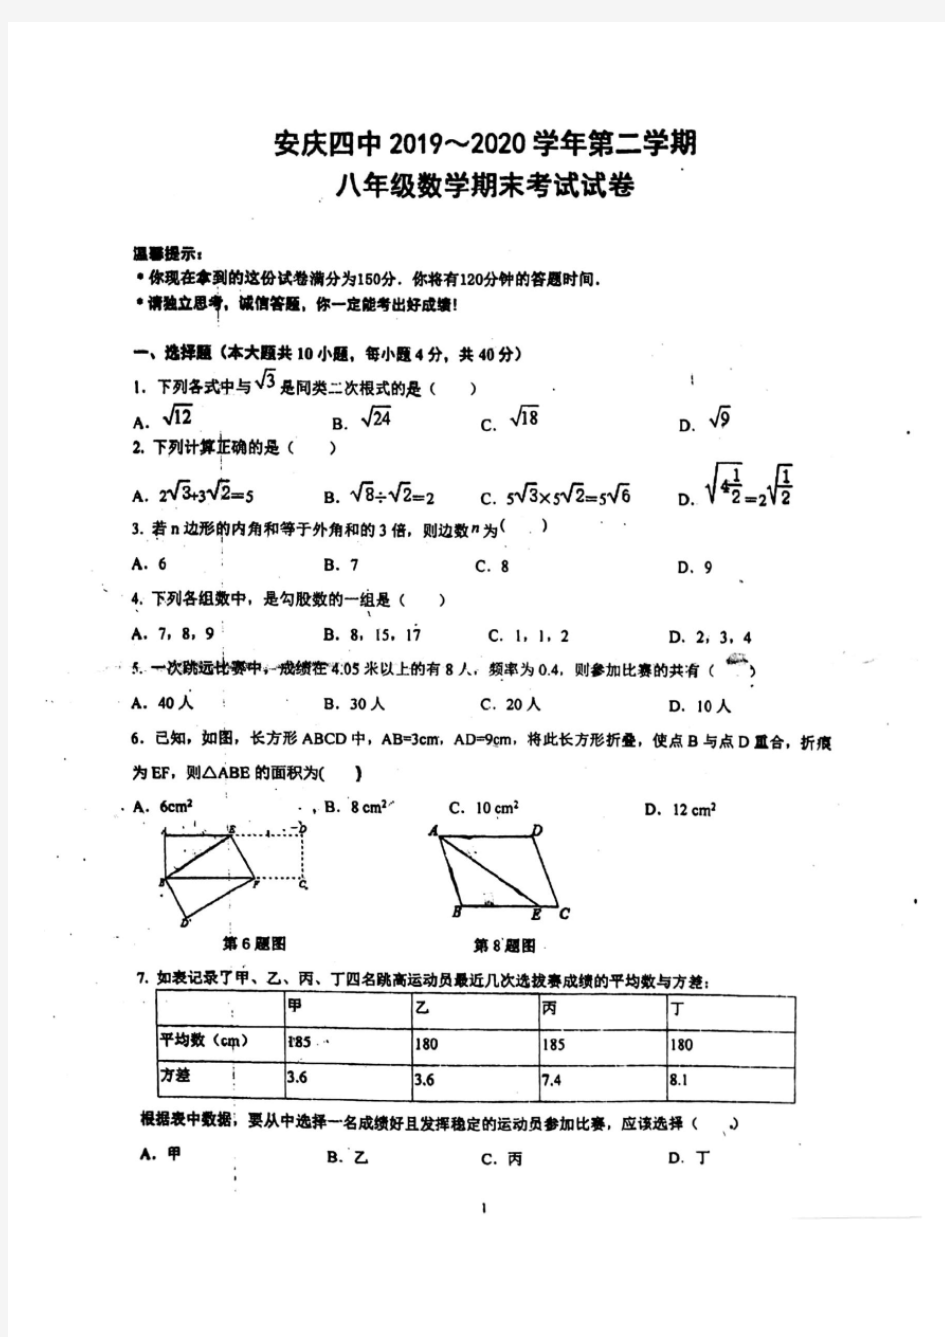 安徽省安庆市四中2019-2020学年第二学期八年级数学期末考试试卷(含答案)